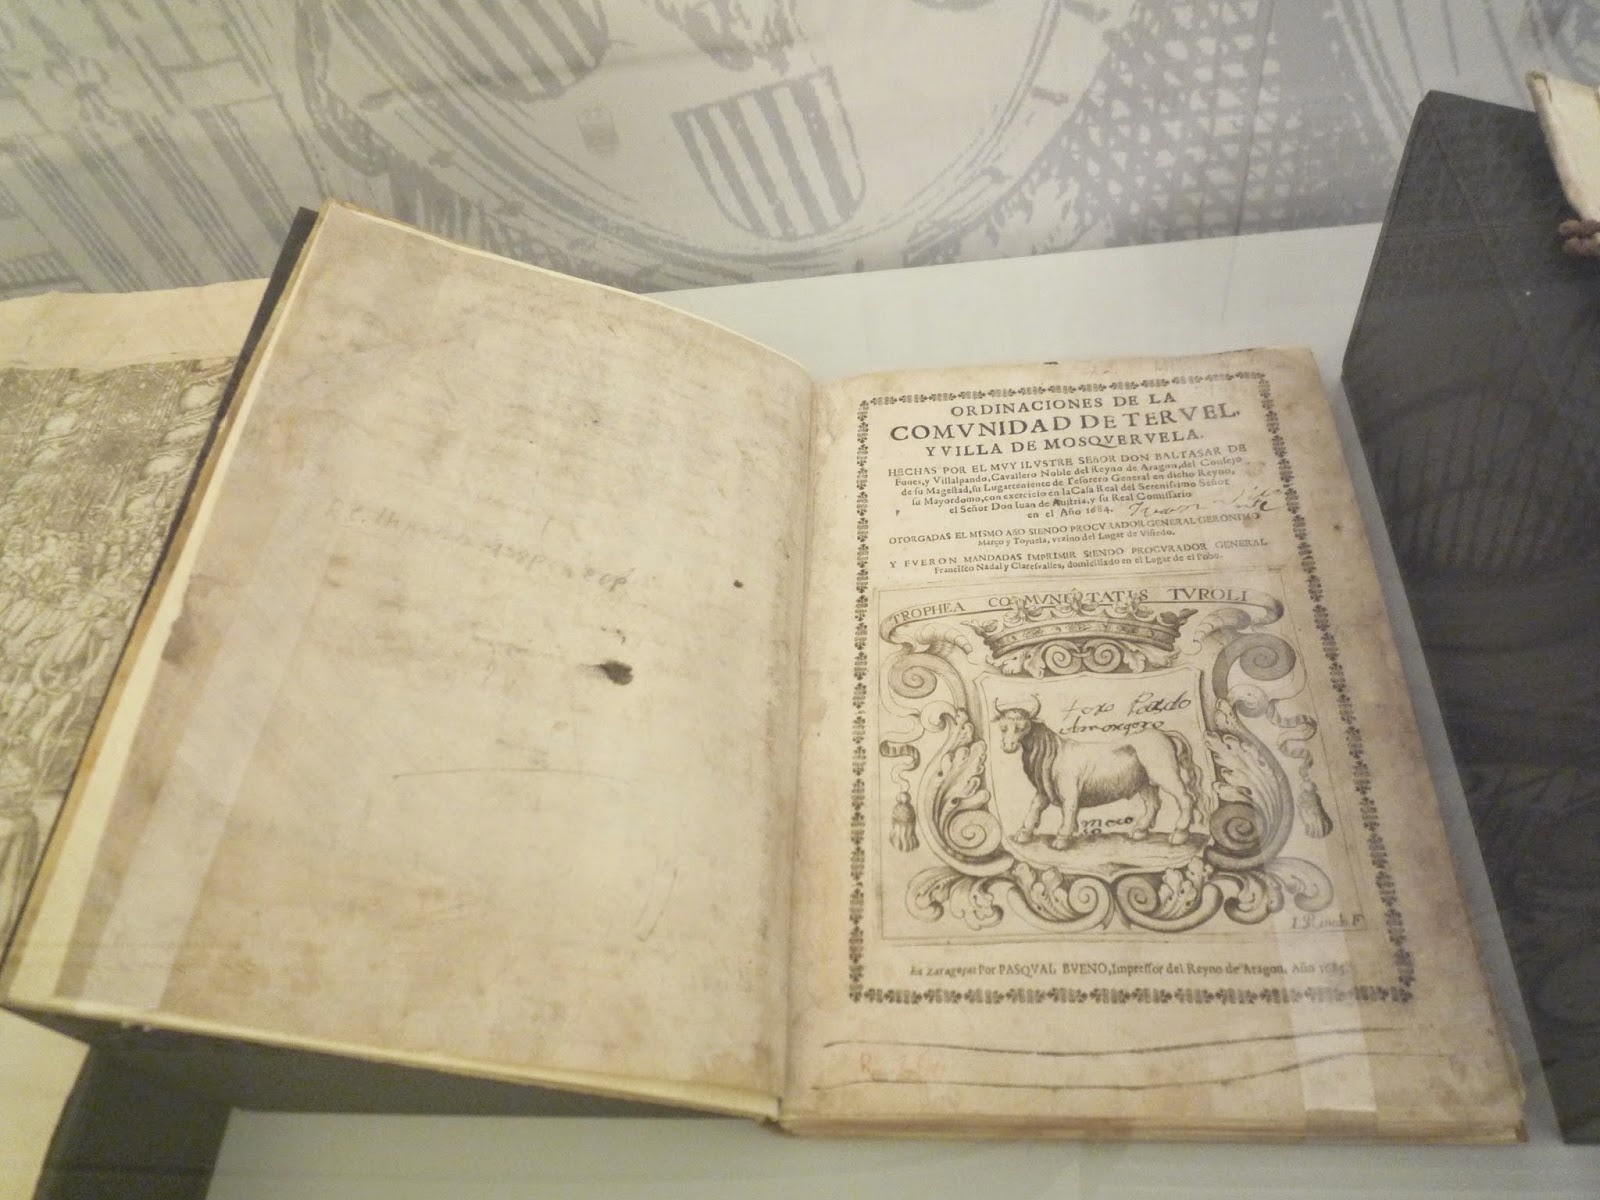 Fueros reales y ordenanzas en el fondo antiguo del INAP: siglos XVI-XIX